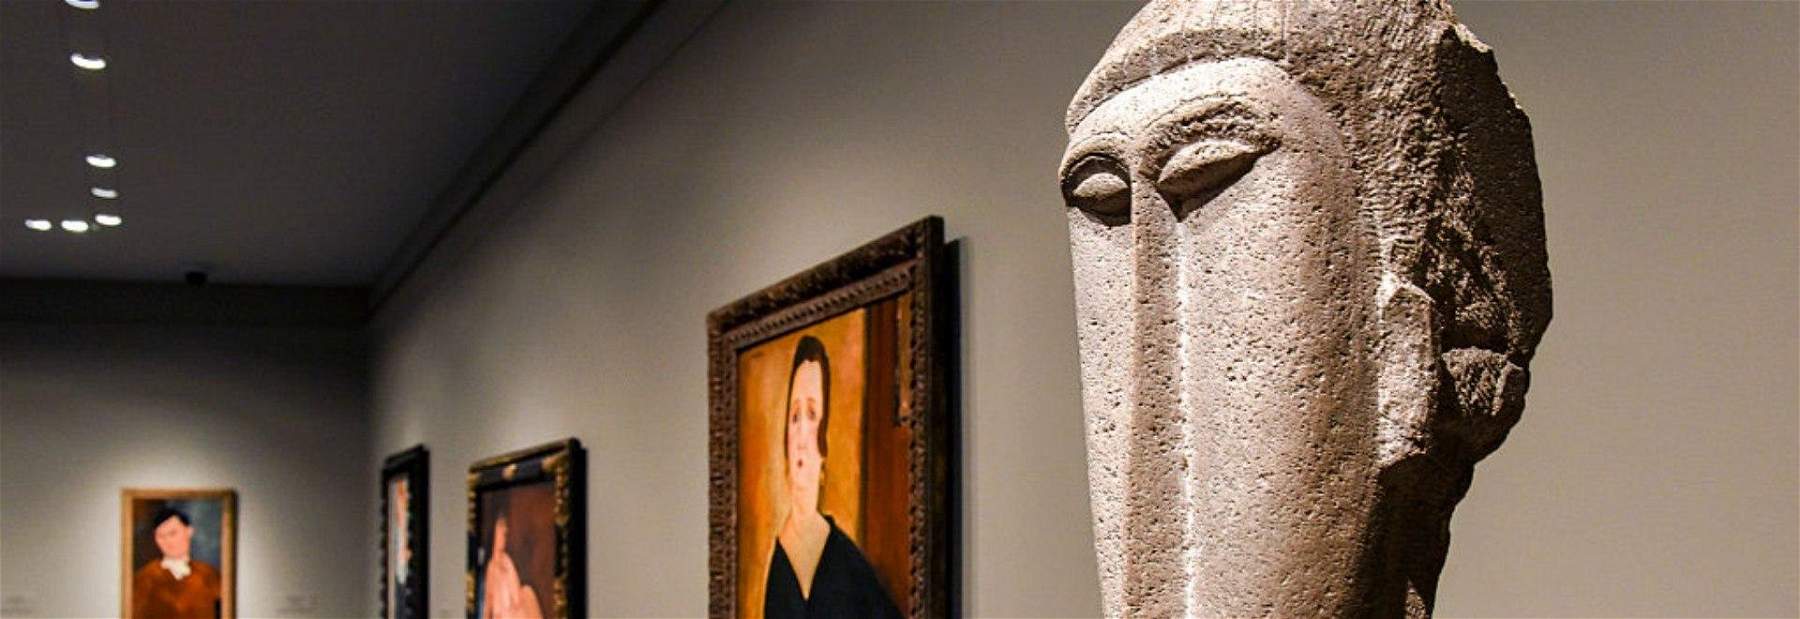 Arte in tv dall'8 al 14 novembre: Modigliani, Matisse e Leonardo da Vinci